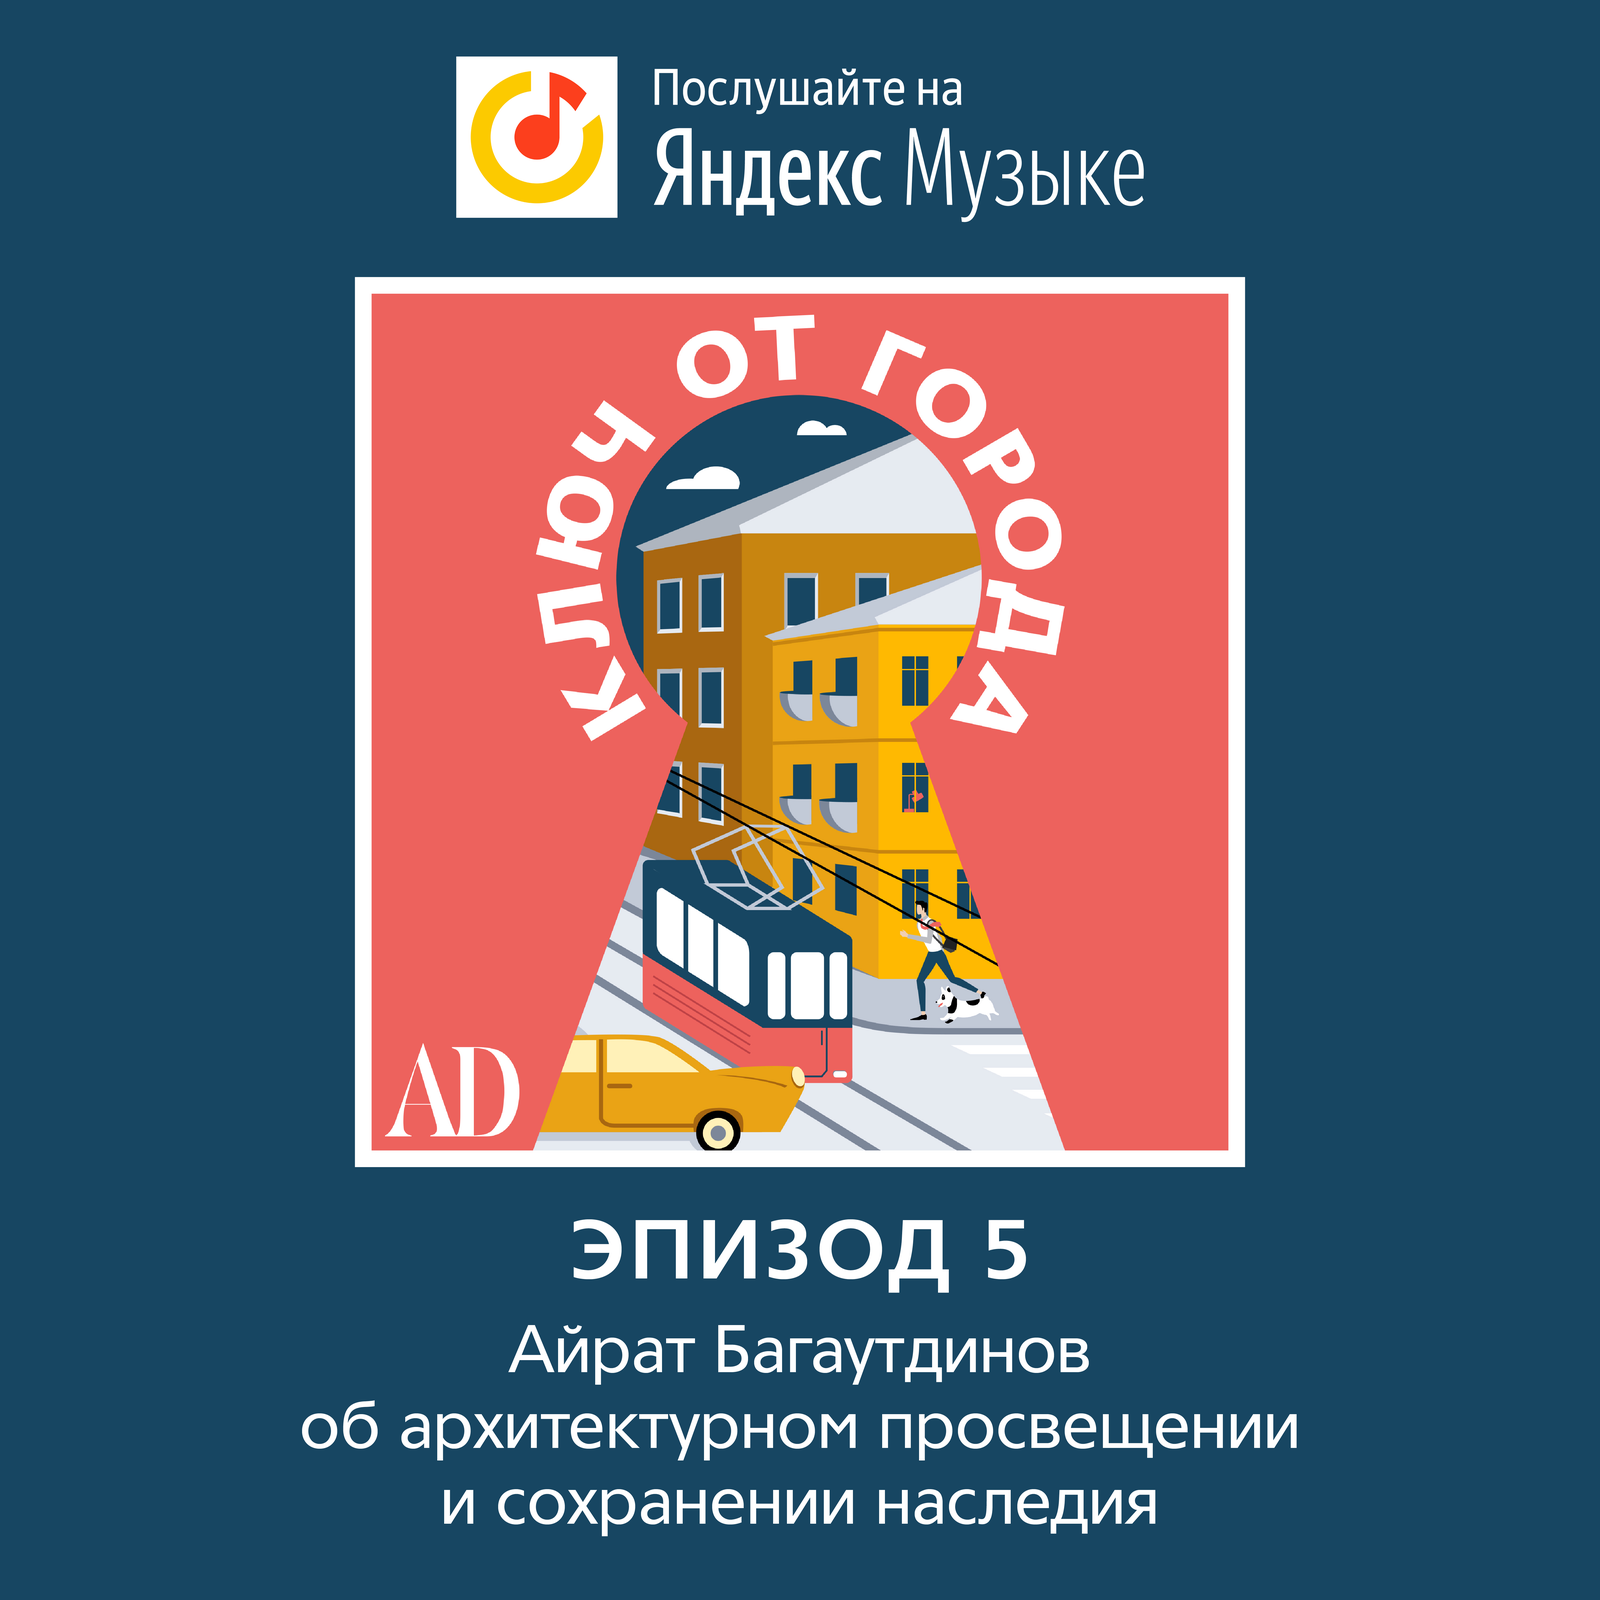 Новый эпизод подкаста AD Айрат Багаутдинов об архитектурном просвещении сохранении наследии и любимых маршрутах по городу